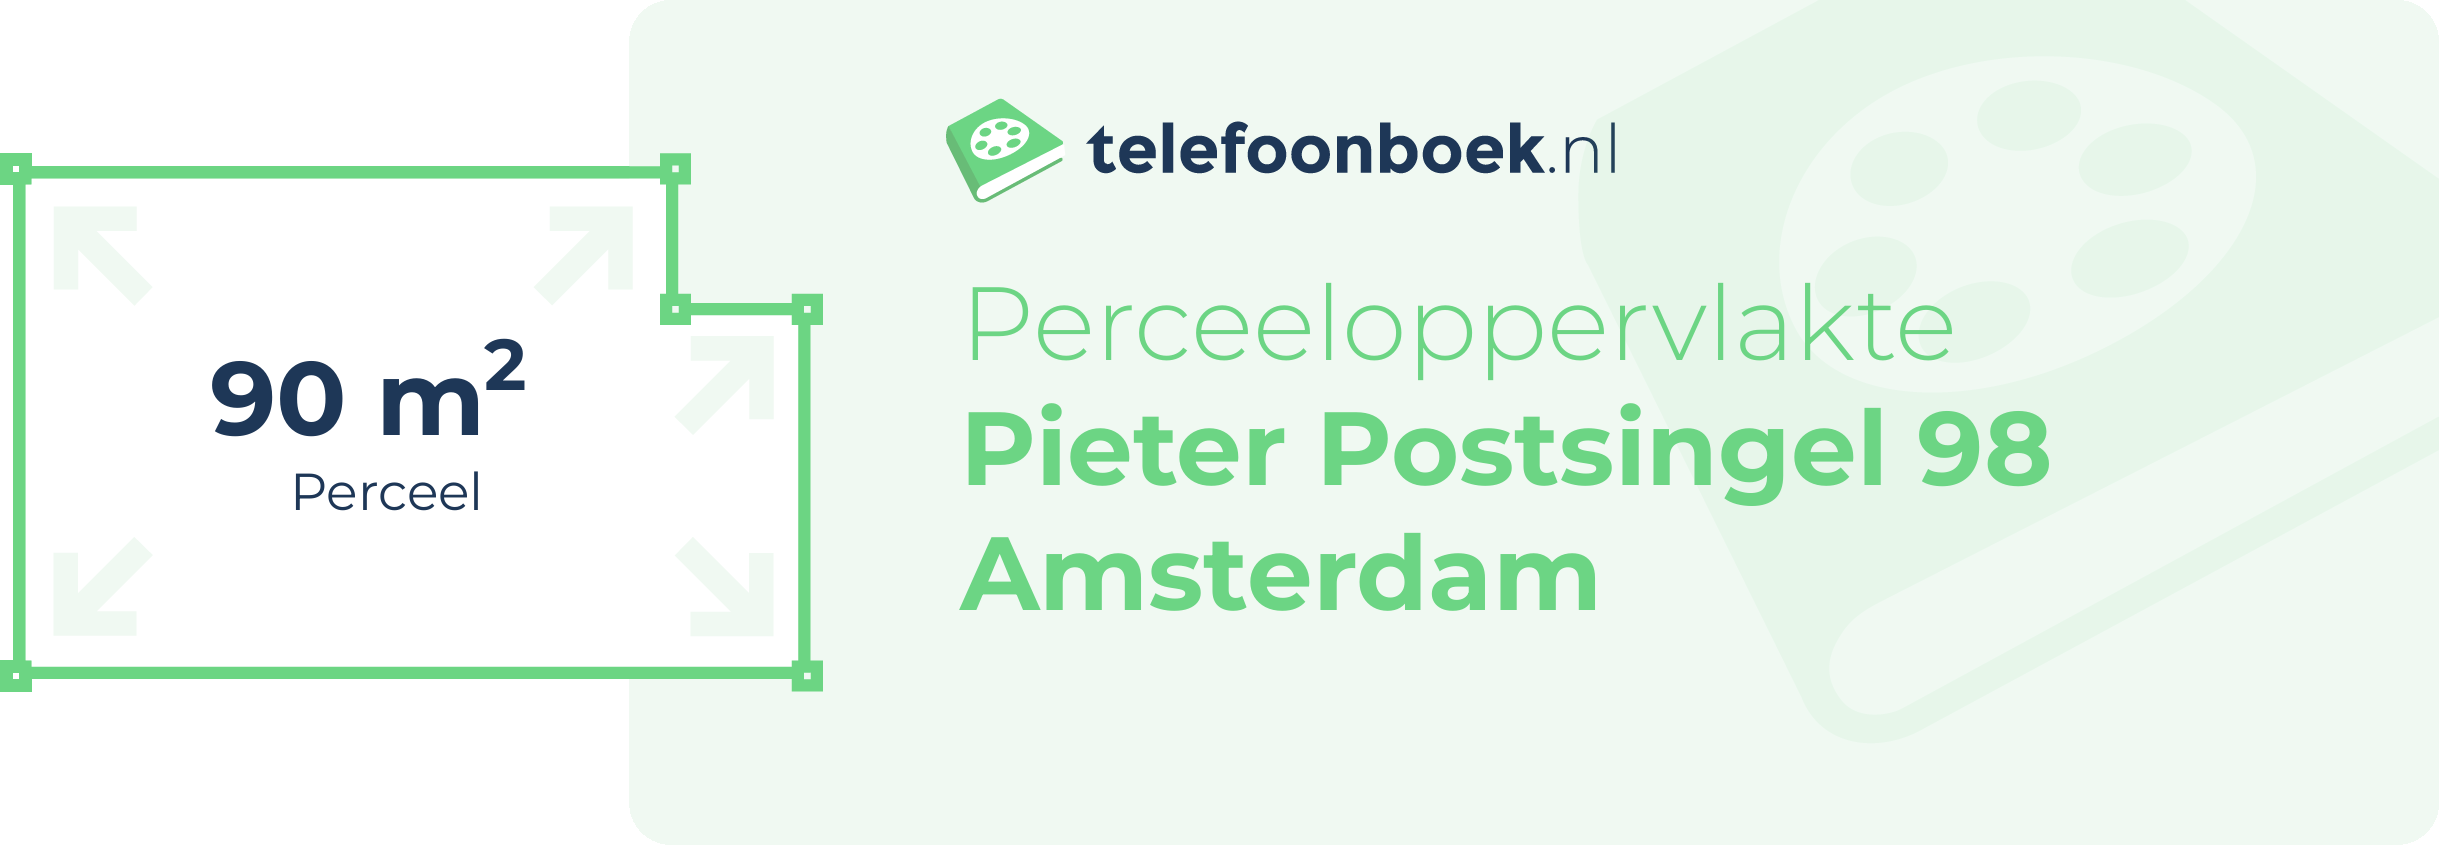 Perceeloppervlakte Pieter Postsingel 98 Amsterdam